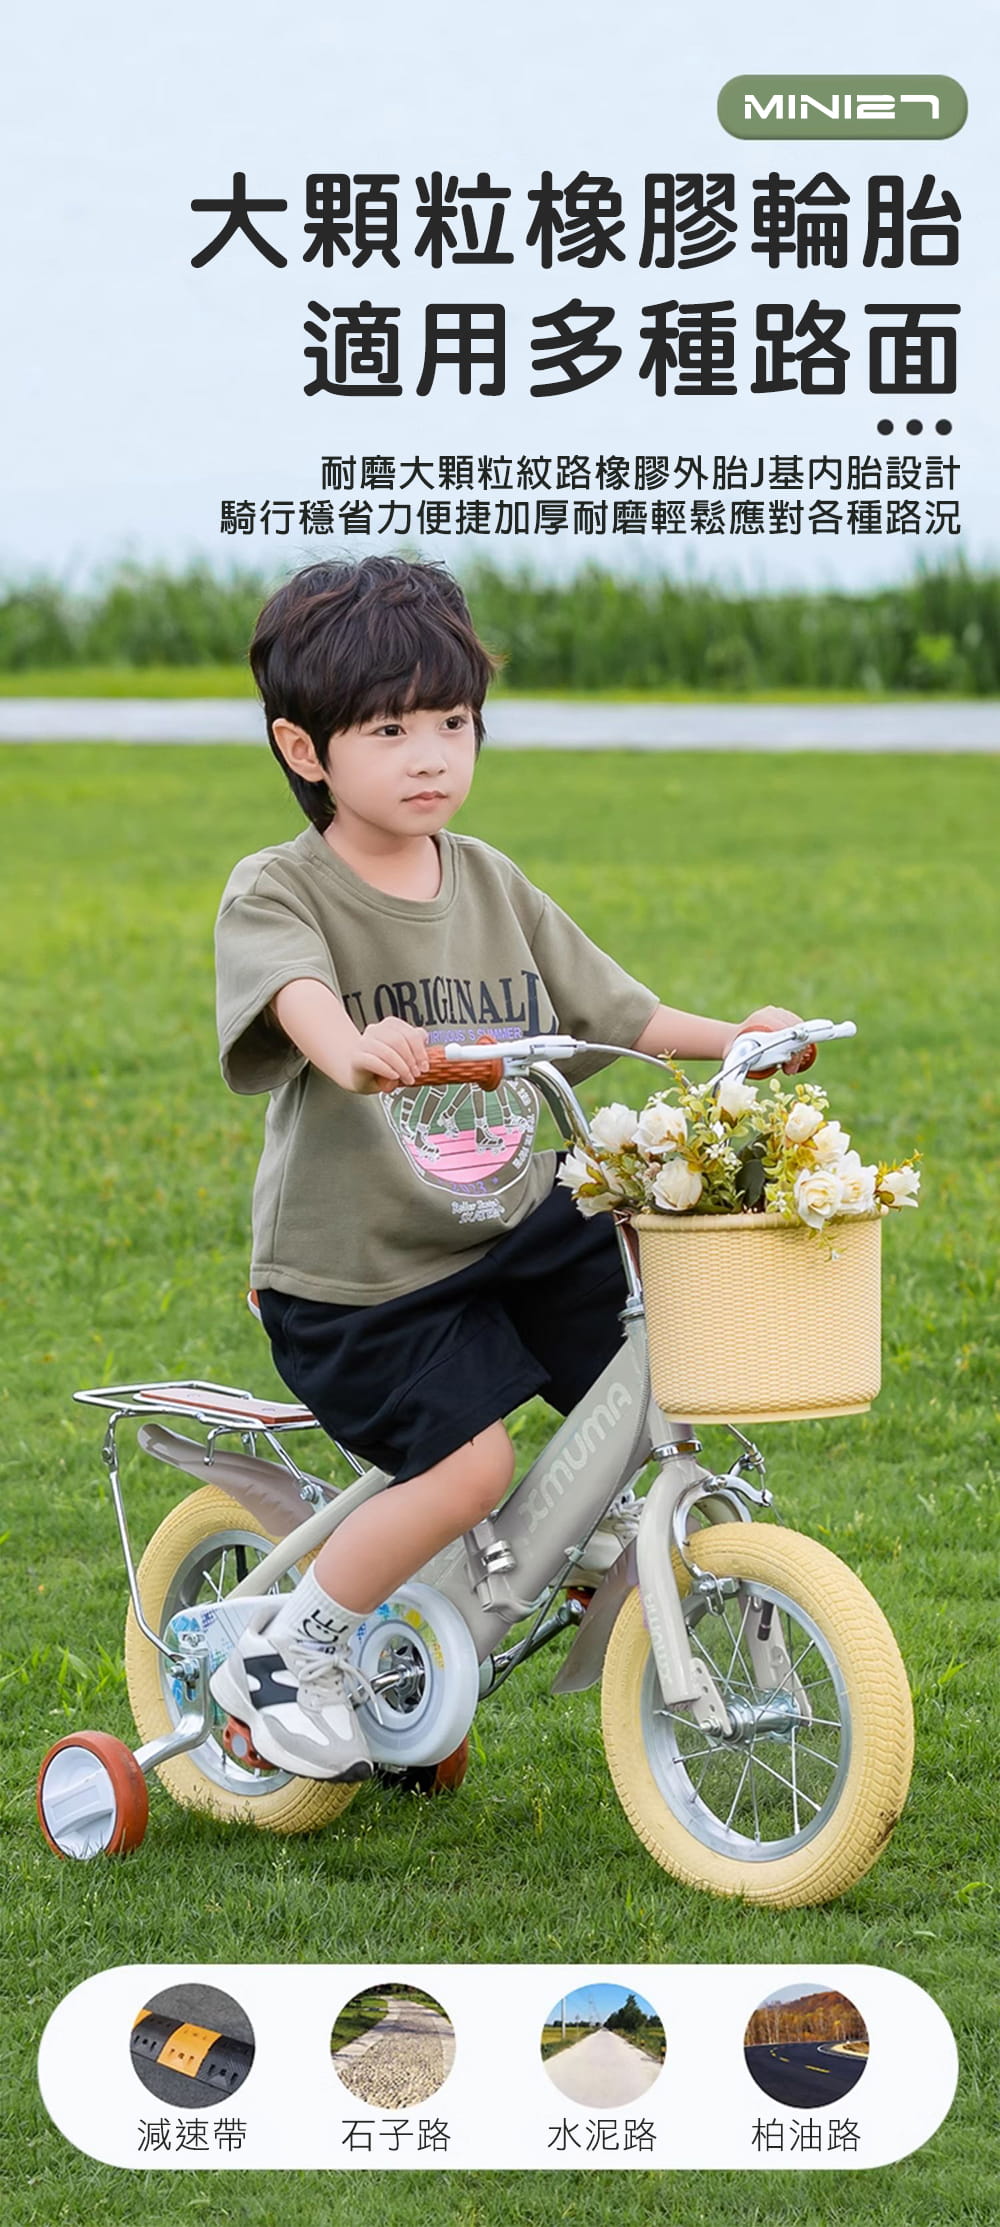 BIKEONE MINI27 兒童折疊自行車16吋男女寶寶小孩摺疊腳踏單車後貨架版款顏色可愛清新 5